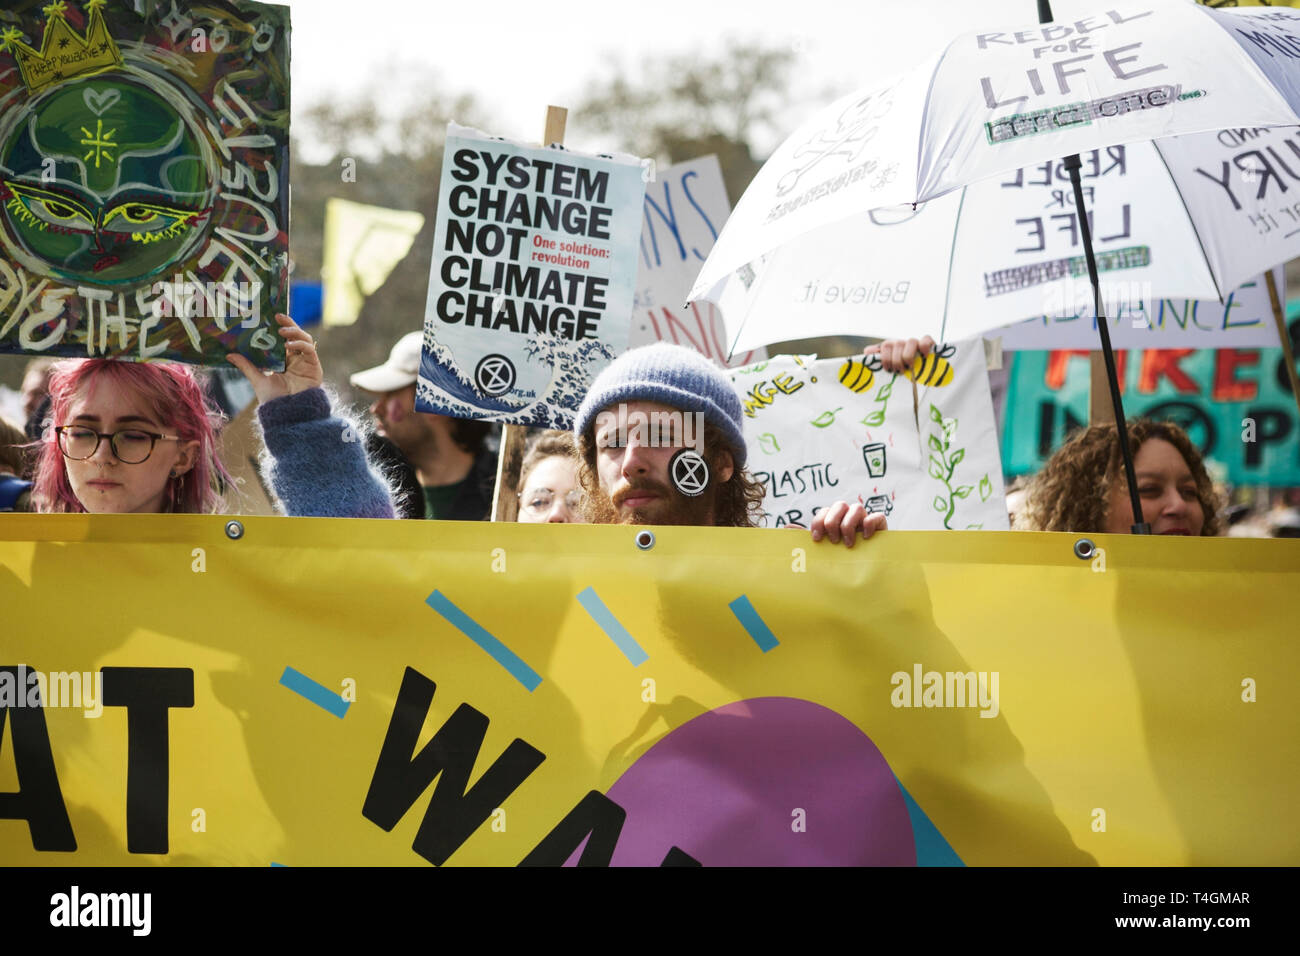 Aussterben Rebellion London - Umwelt protestieren Aktivisten - anspruchsvolle Regierungen ergreifen Maßnahmen gegen den Klimawandel. Protestiert. Stockfoto